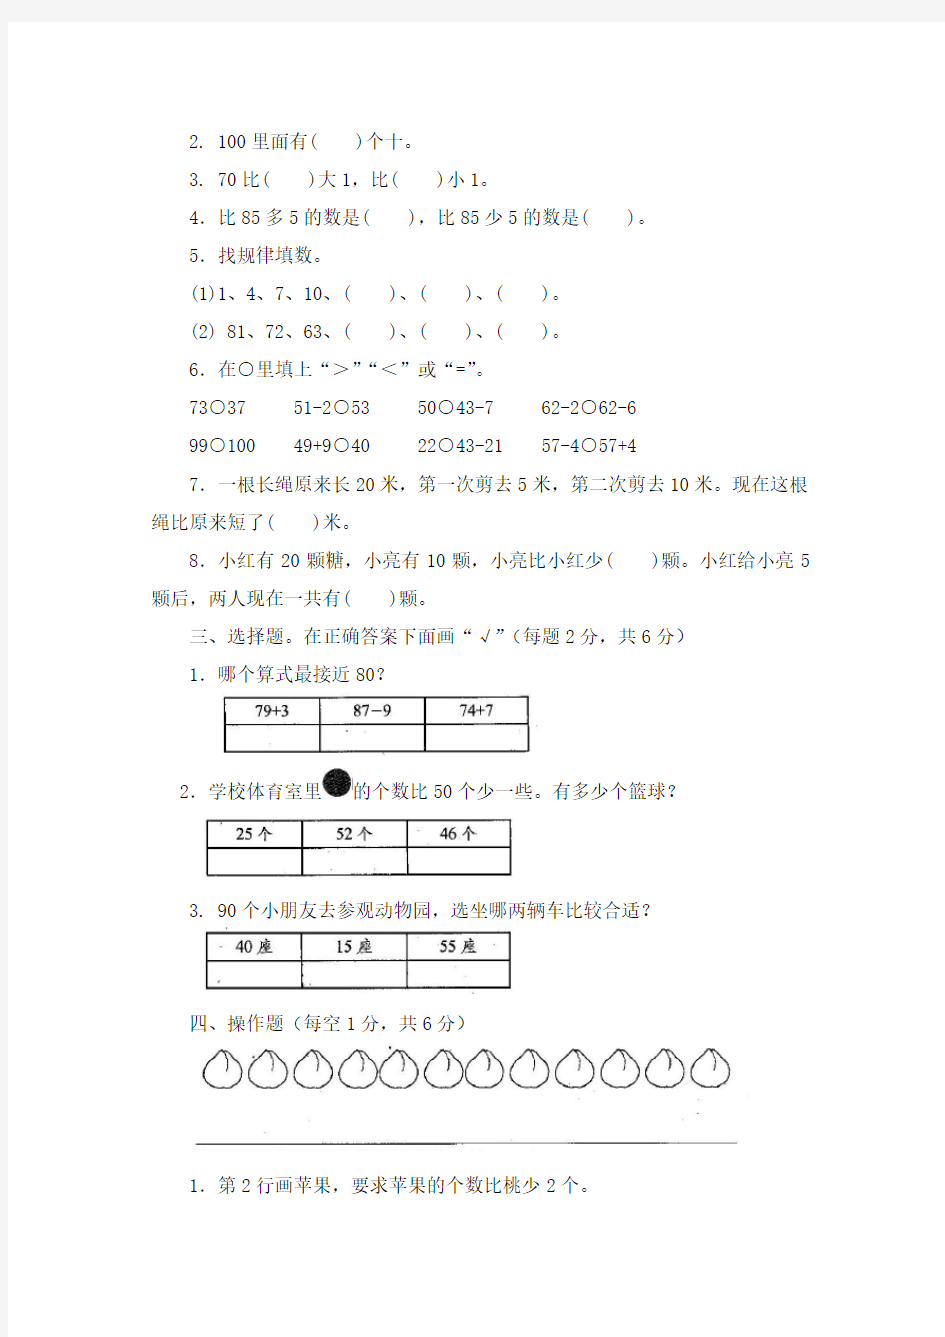 【新】苏教版2二年级上册数学学习能力检测卷(全套)【小学生数学报】